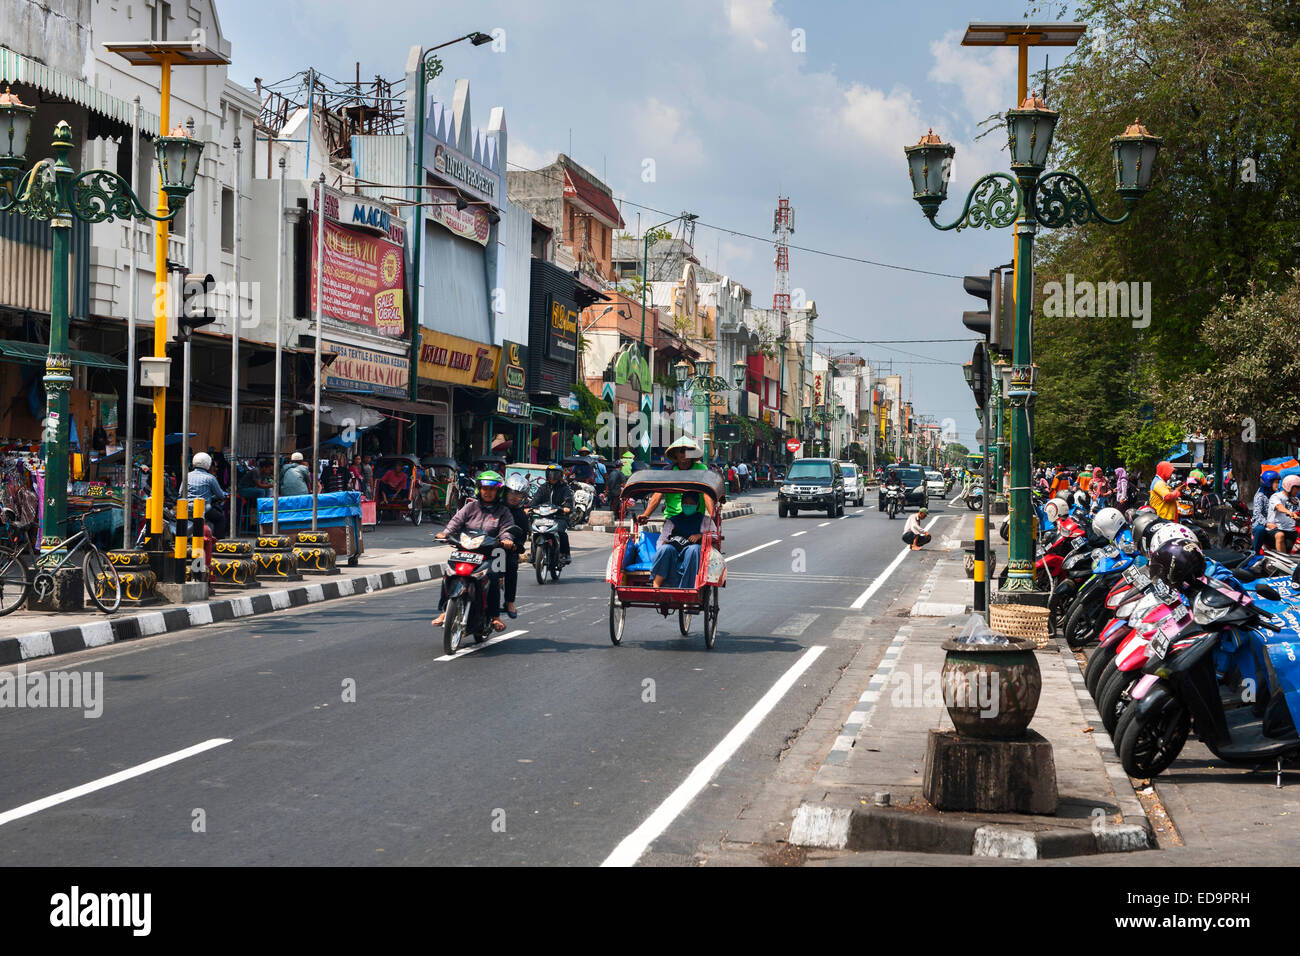 Ver abajo Jalan Malioboro, una de las principales avenidas en Yogyakarta, Java, Indonesia. Foto de stock